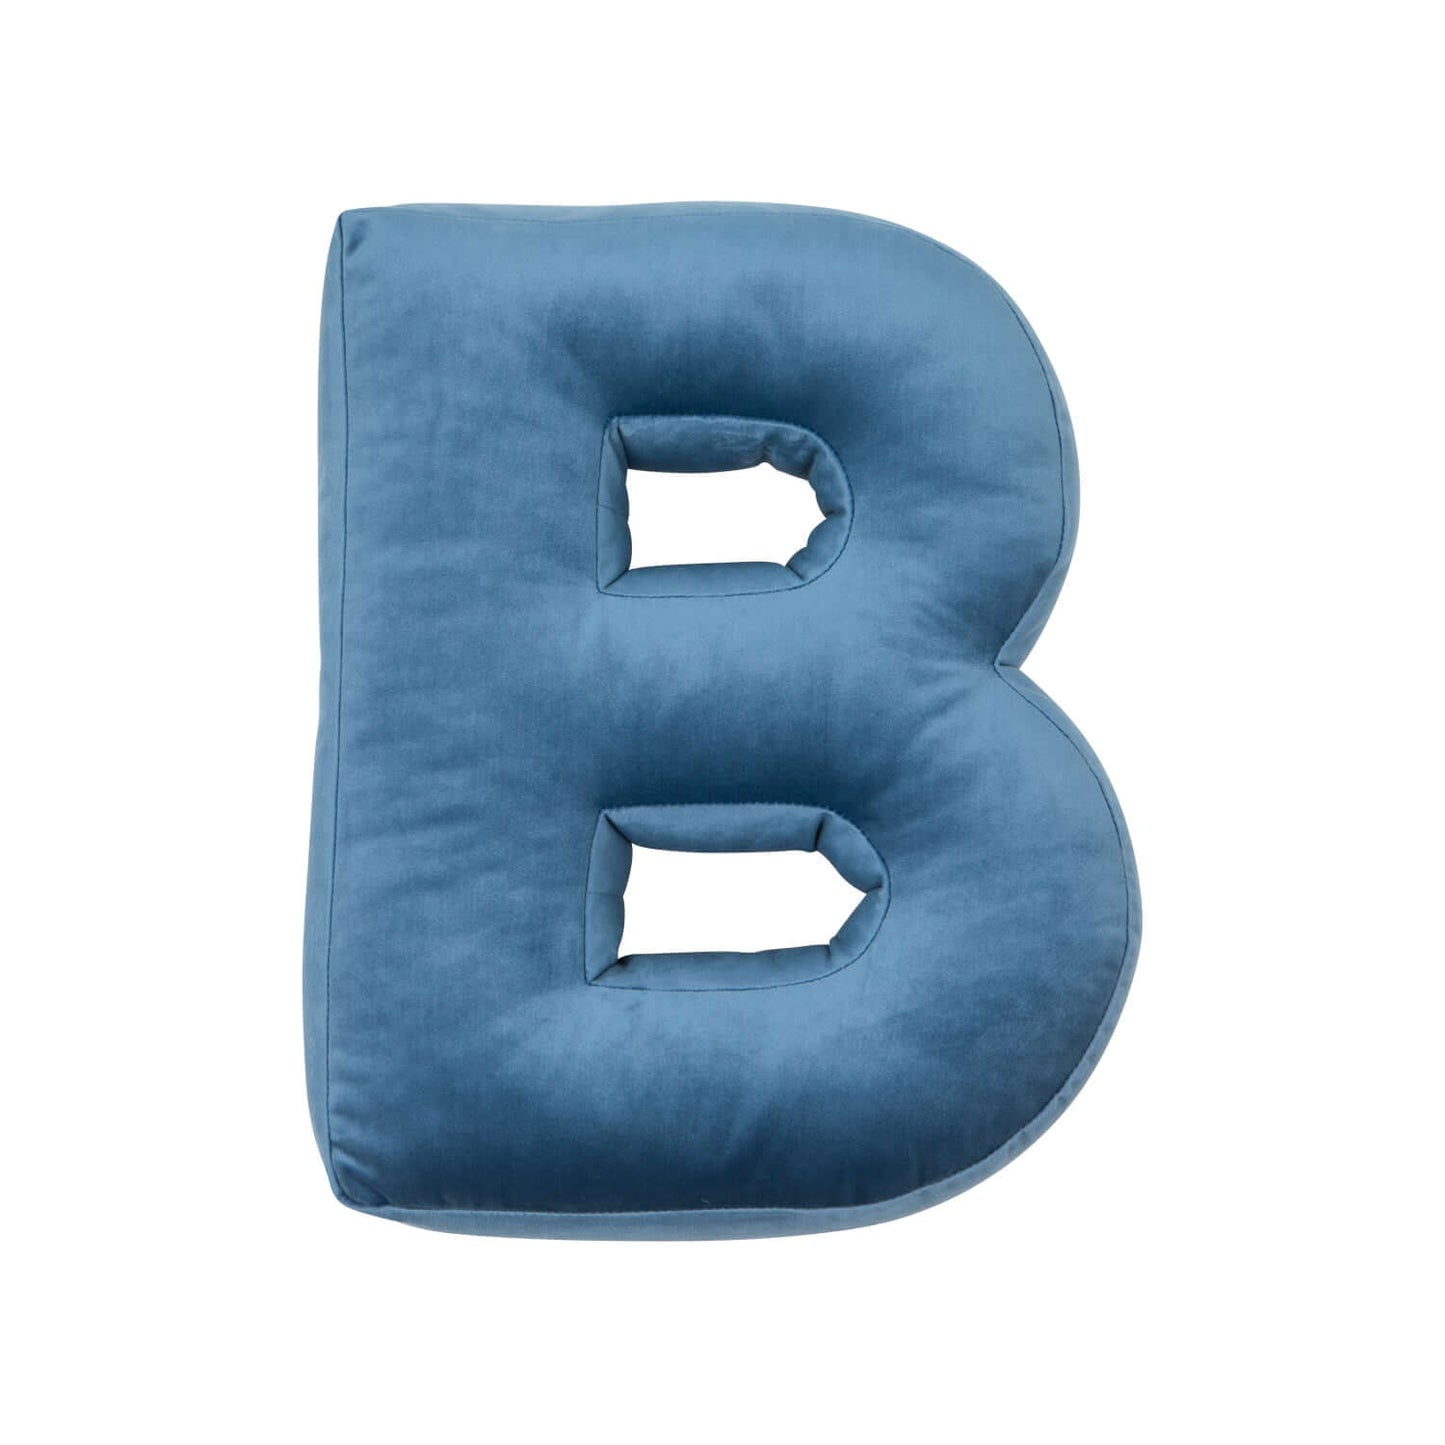 Poduszka literka welurowa B w kolorze niebieskim od bettys home przód